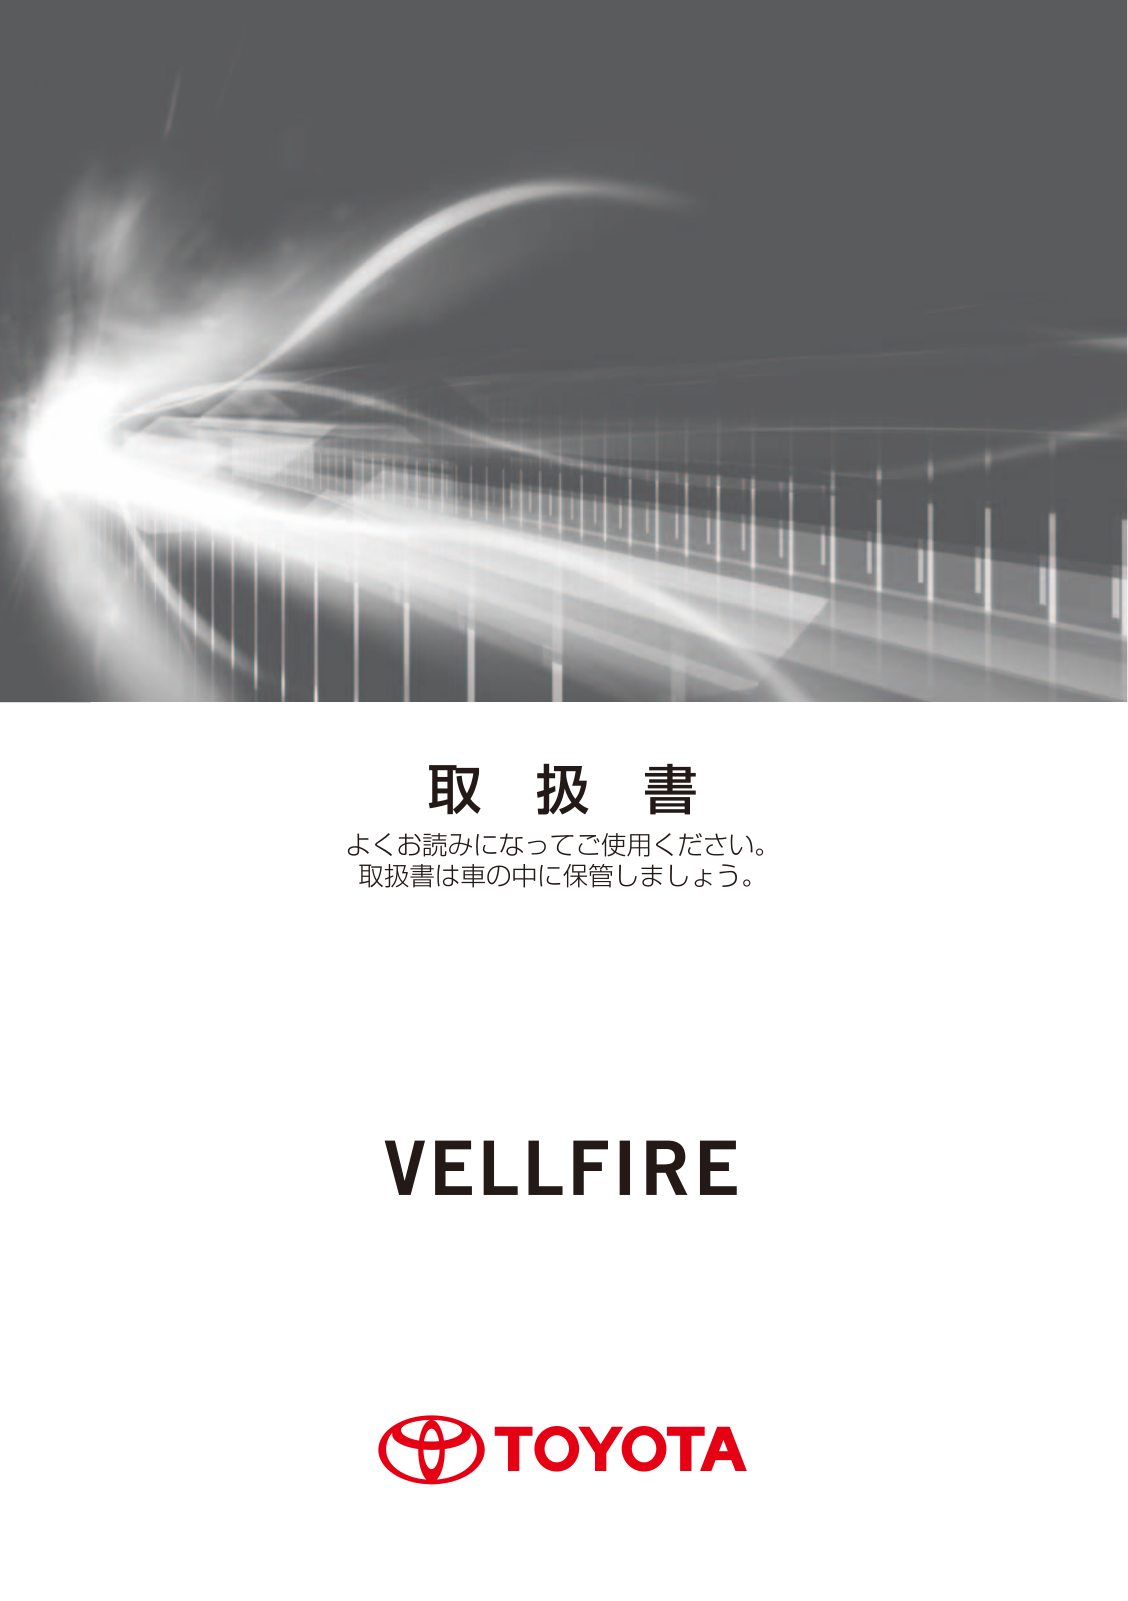 Toyota Vellfire 2017 Owner's Manual